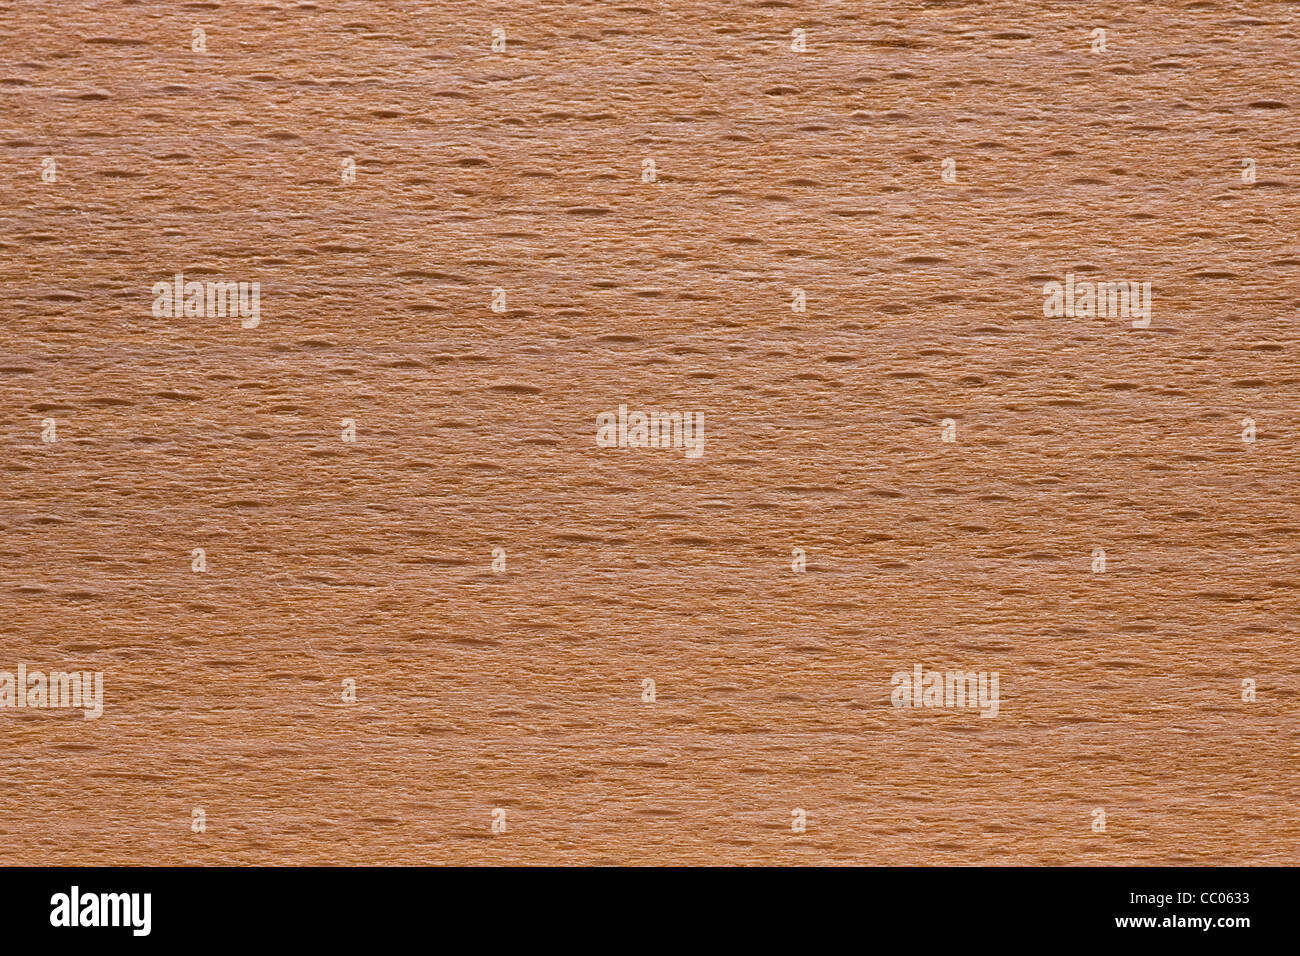 Wood grain of European Beech / Common Beech (Fagus sylvatica), Europe Stock Photo